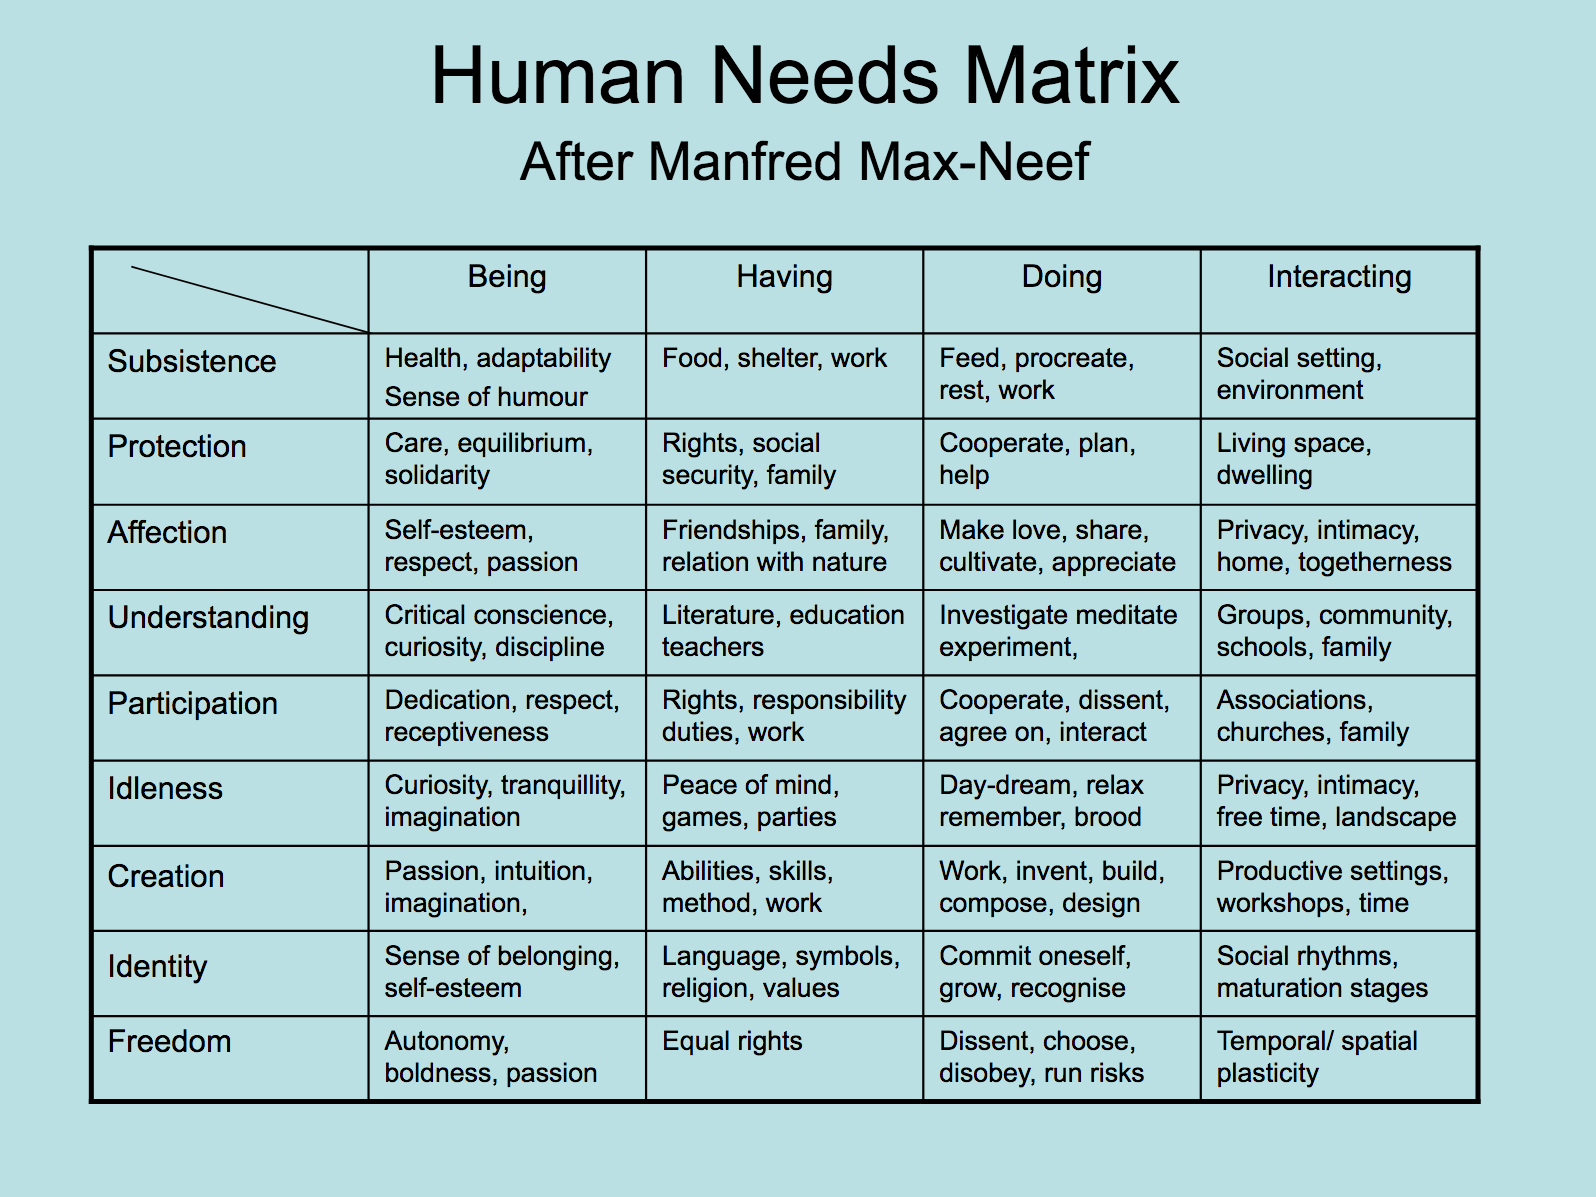 Human Needs Matrix - After Manfred Max-Neef